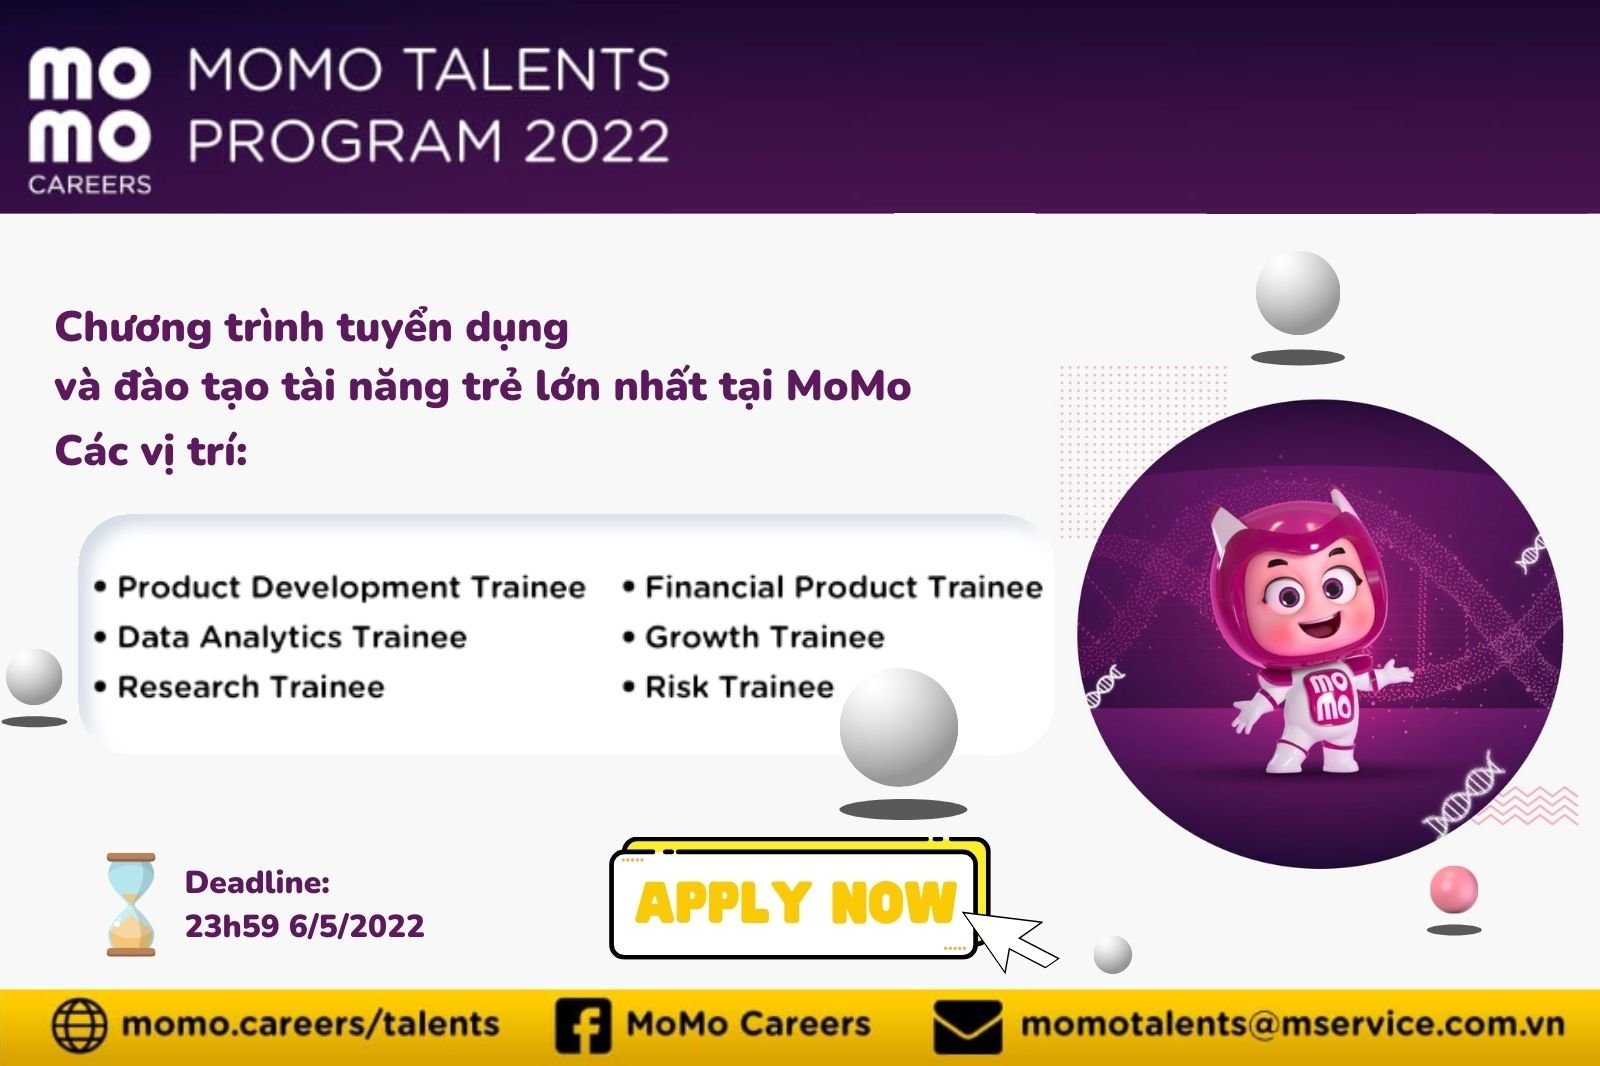 MOMO Talent 2022: Unlock Your M-DNA - Chương trình tuyển dụng lớn nhất dành riêng cho các bạn sinh viên tài năng của MoMo